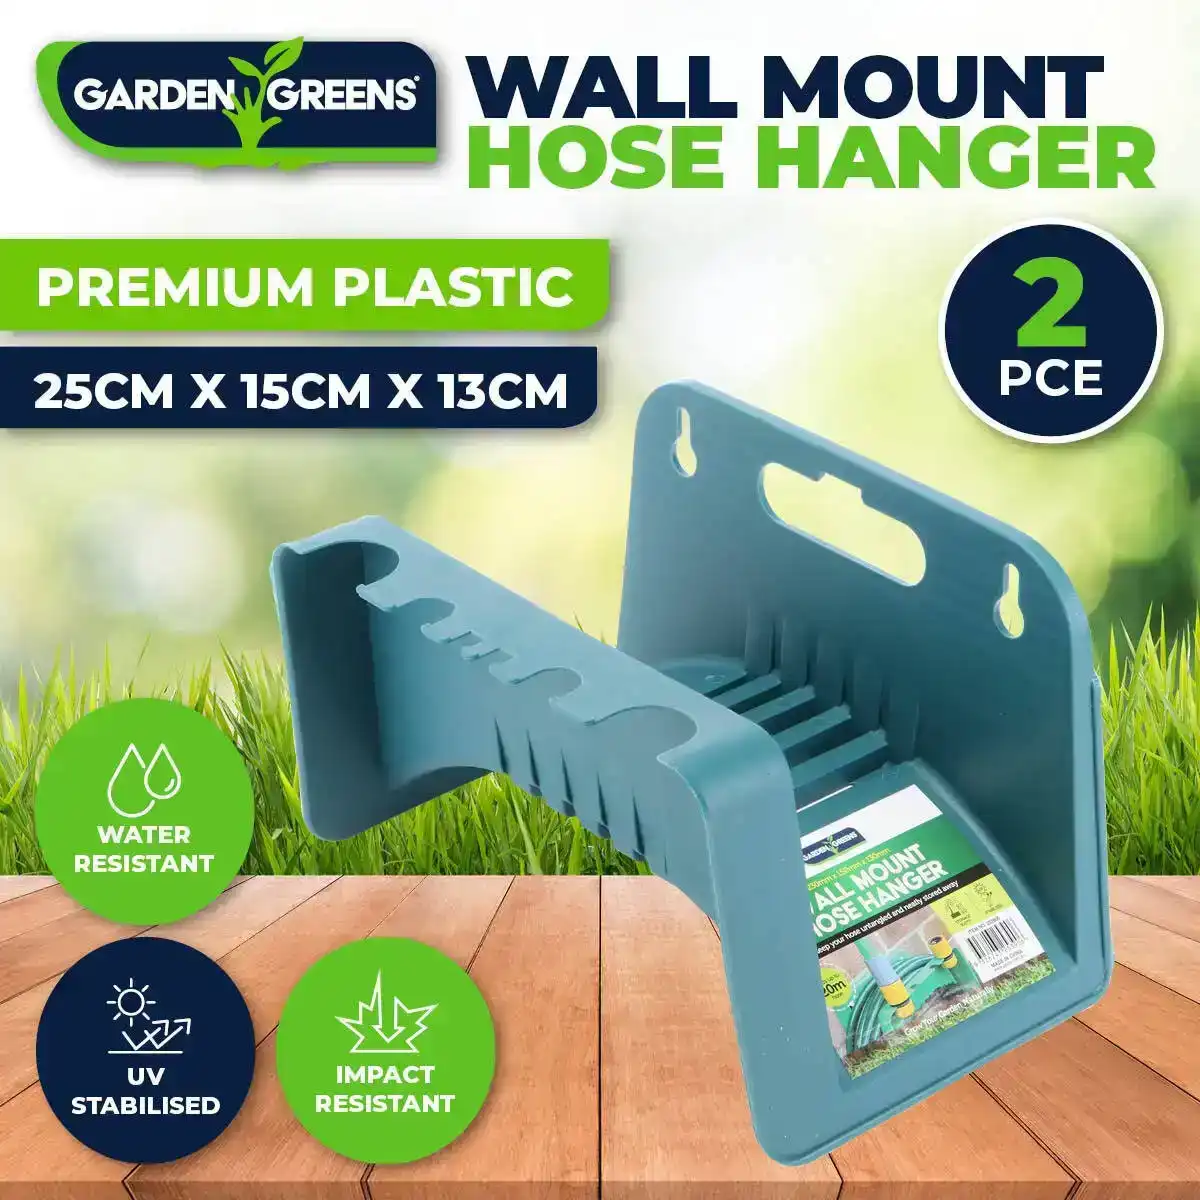 Garden Greens® 2PCE Hose Hanger Wall Mountable UV Stabilised Durable 25cm